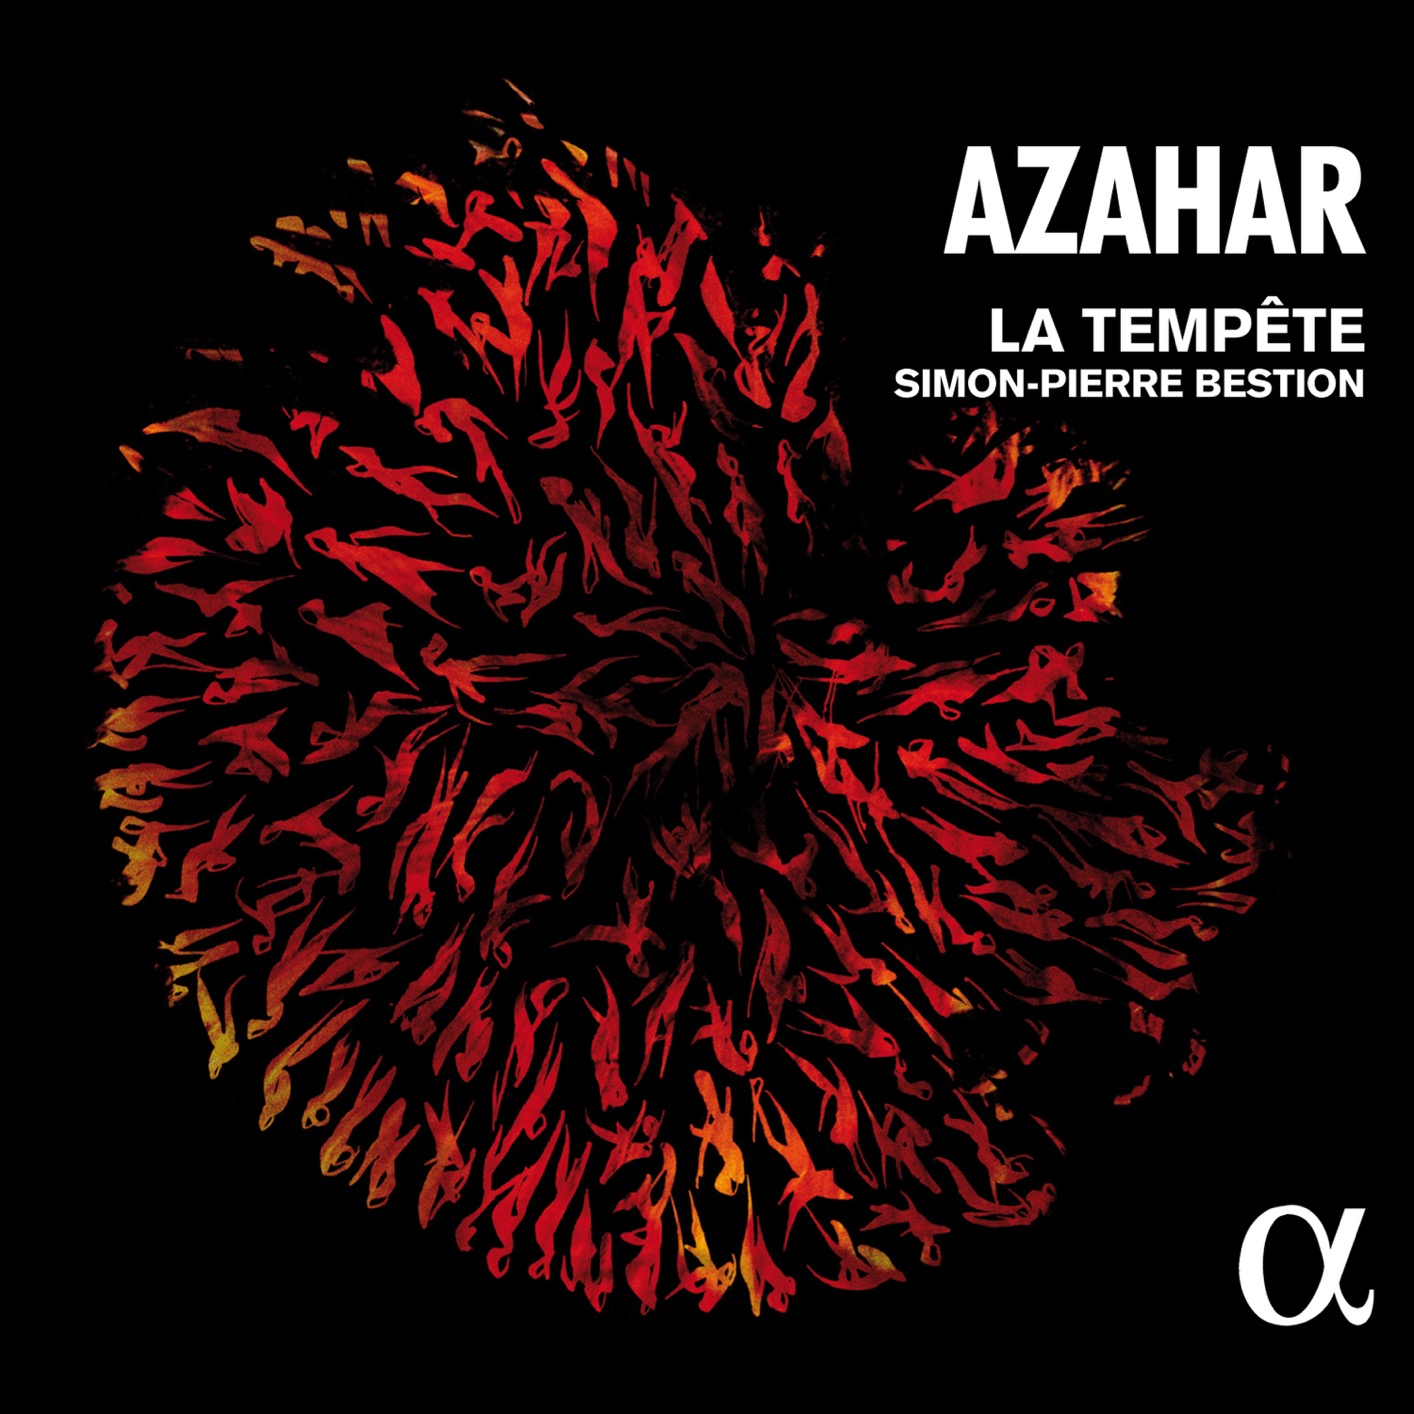 La Tempete & Simon-Pierre Bestion - Azahar (2017) [FLAC 24bit/88,2kHz]